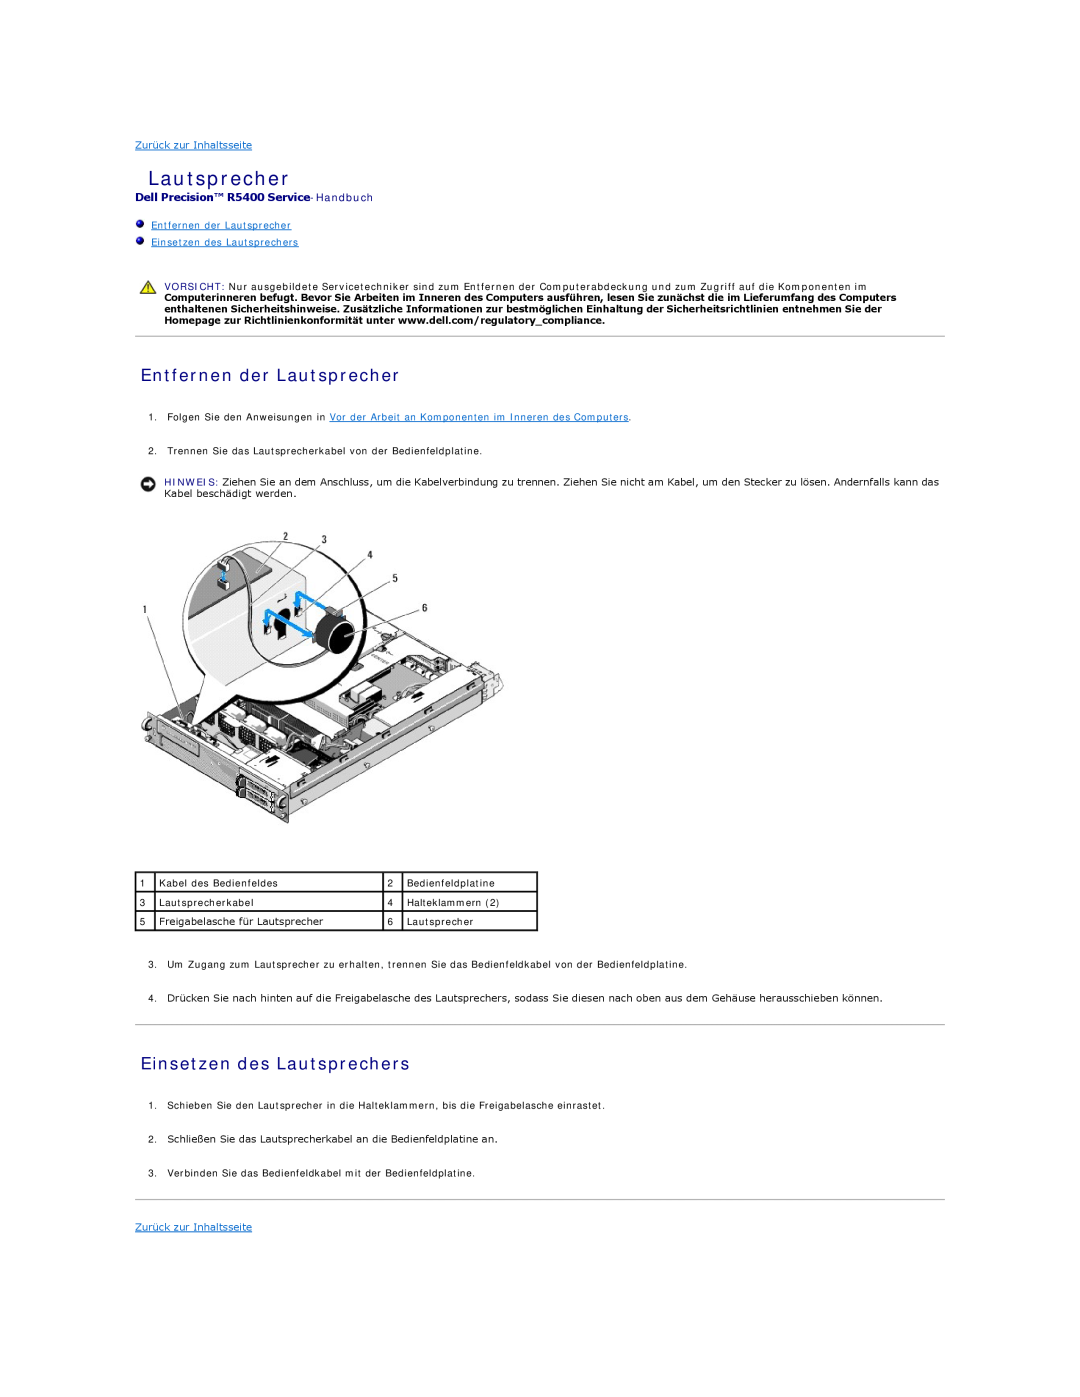 Dell manual Entfernen der Lautsprecher, Einsetzen des Lautsprechers, Dell Precision R5400 Service-Handbuch 